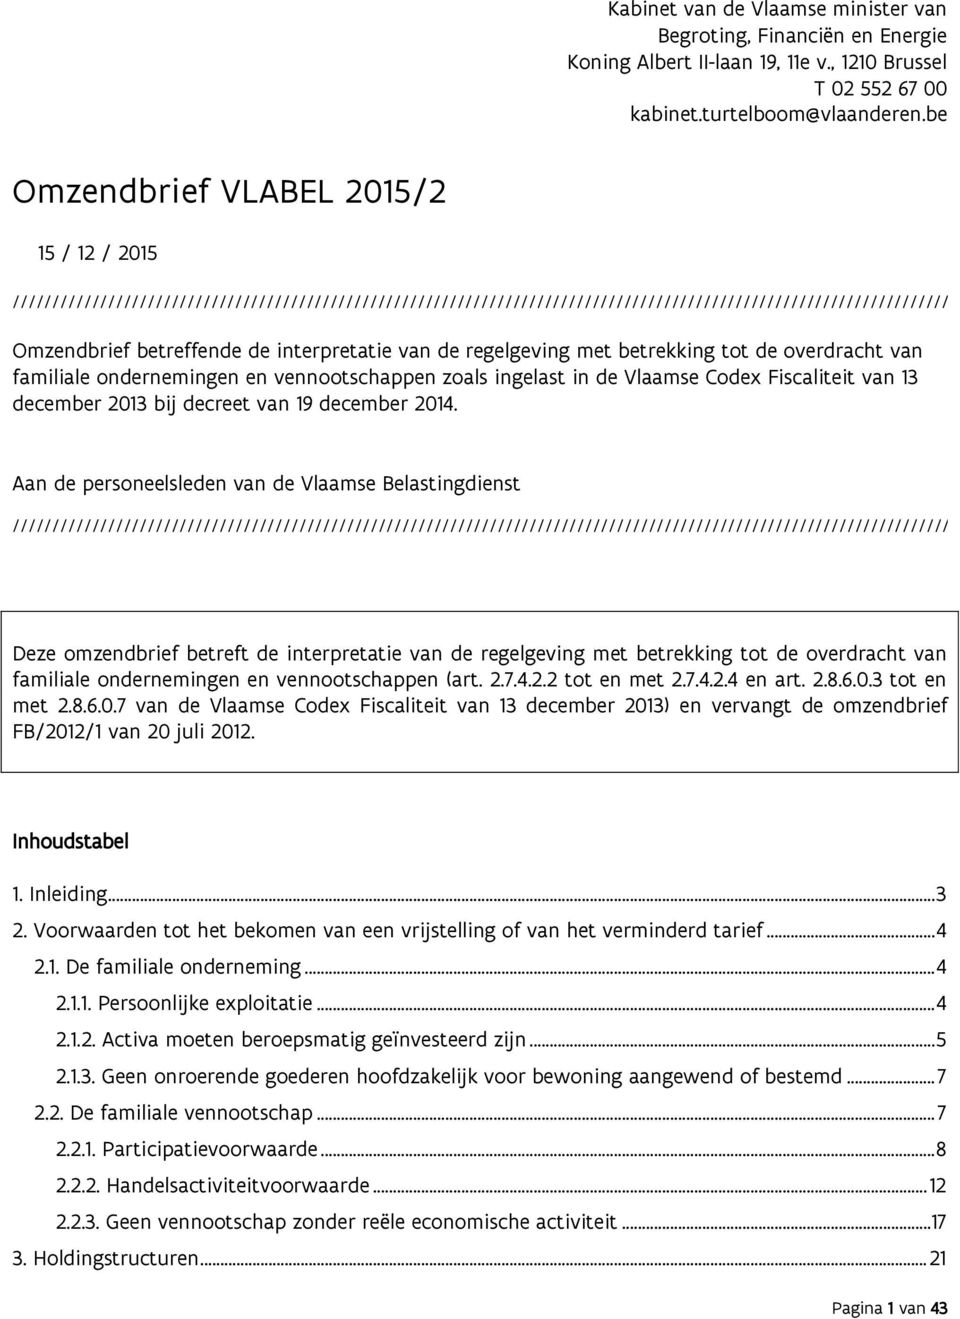 betreffende de interpretatie van de regelgeving met betrekking tot de overdracht van familiale ondernemingen en vennootschappen zoals ingelast in de Vlaamse Codex Fiscaliteit van 13 december 2013 bij